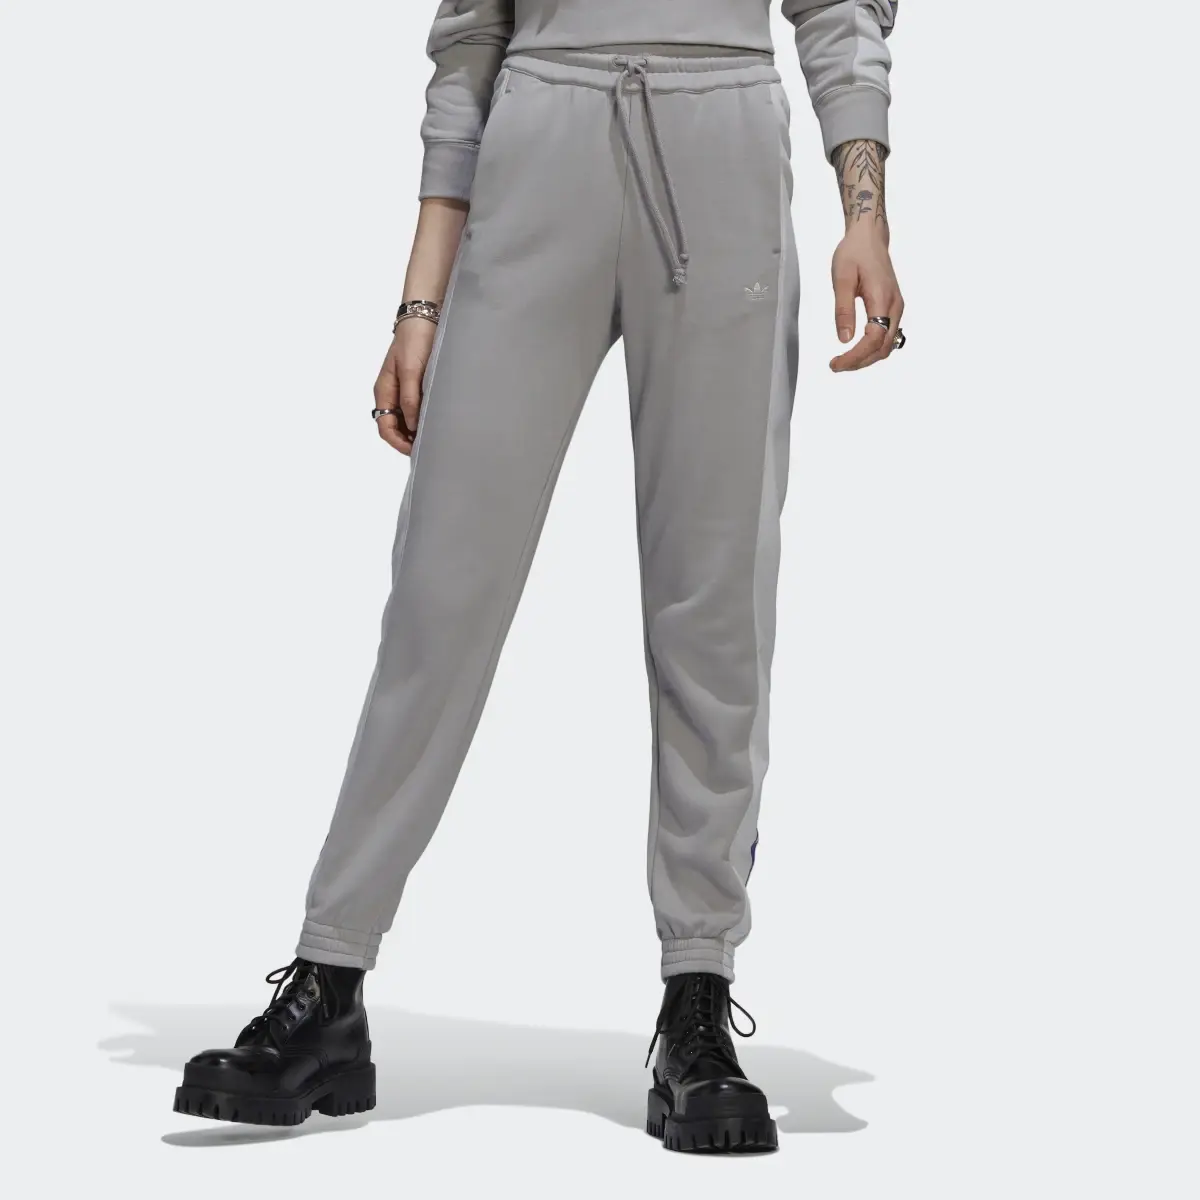 Adidas Pantalon sportswear graphique à chevilles élastiques Blocked. 1